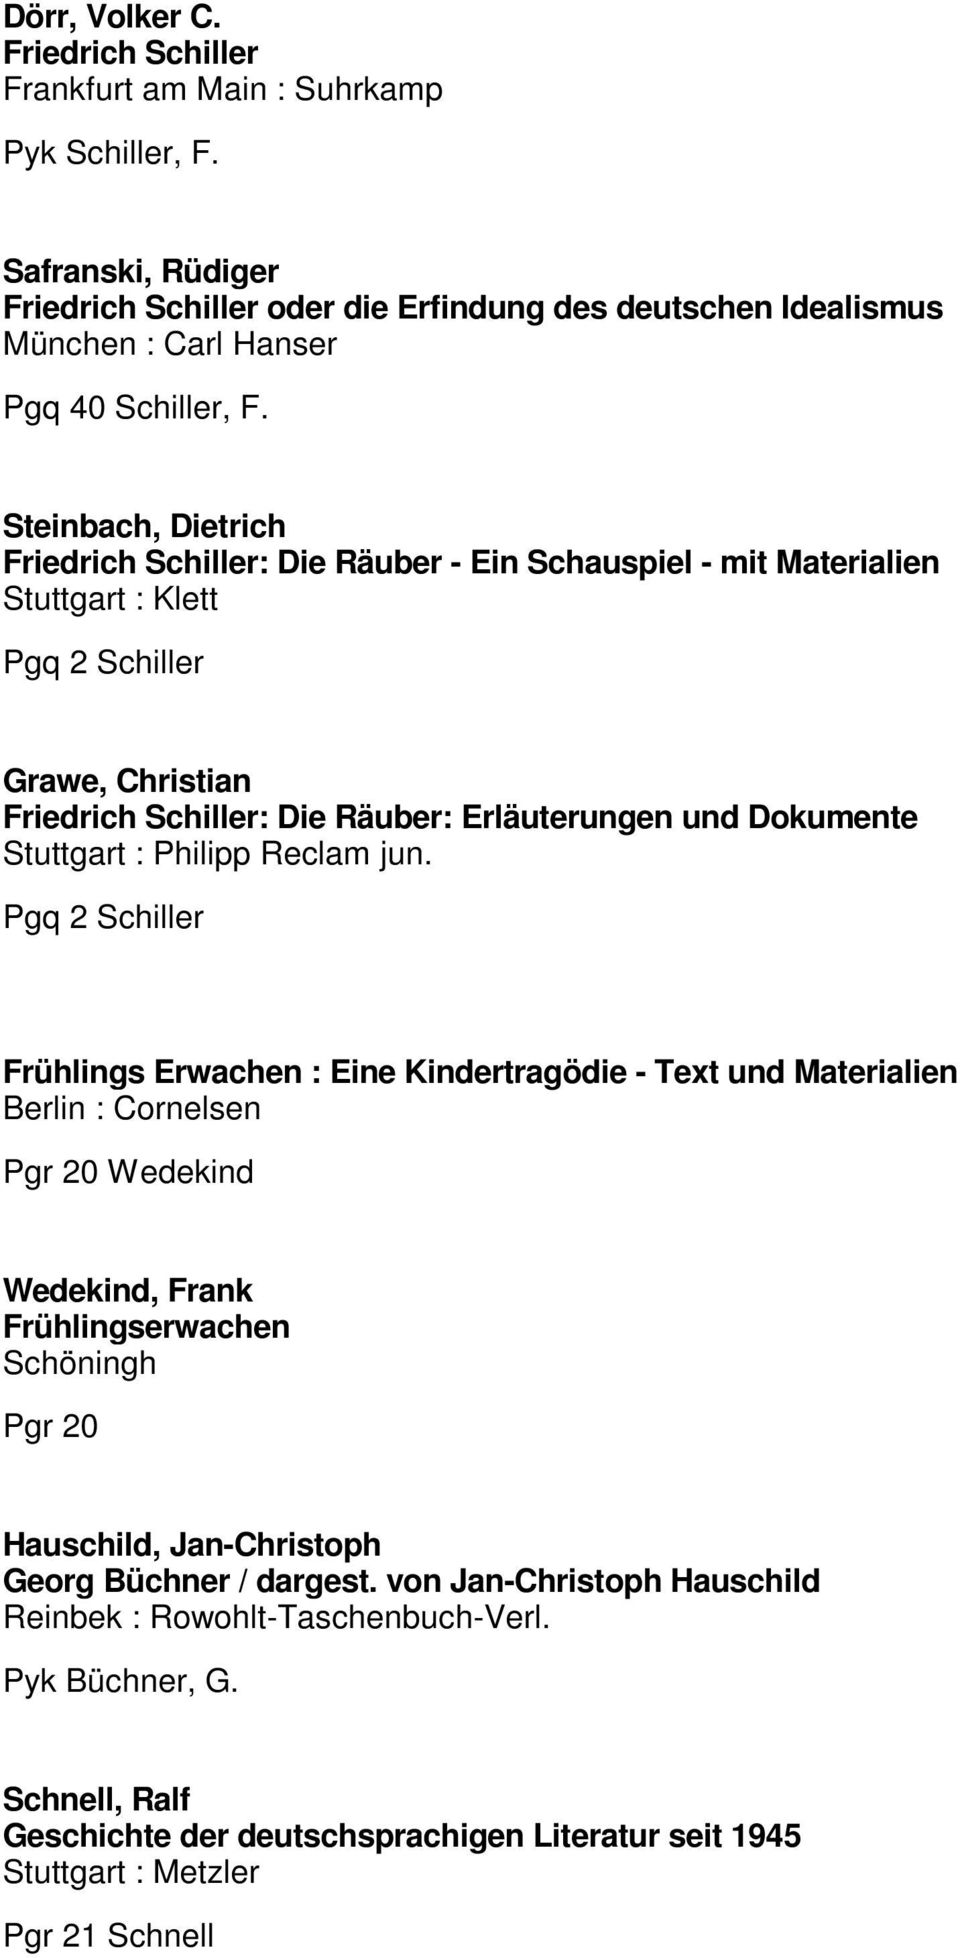 Steinbach, Dietrich Friedrich Schiller: Die Räuber - Ein Schauspiel - mit Materialien Pgq 2 Schiller Grawe, Christian Friedrich Schiller: Die Räuber: Erläuterungen und Dokumente Stuttgart : Philipp